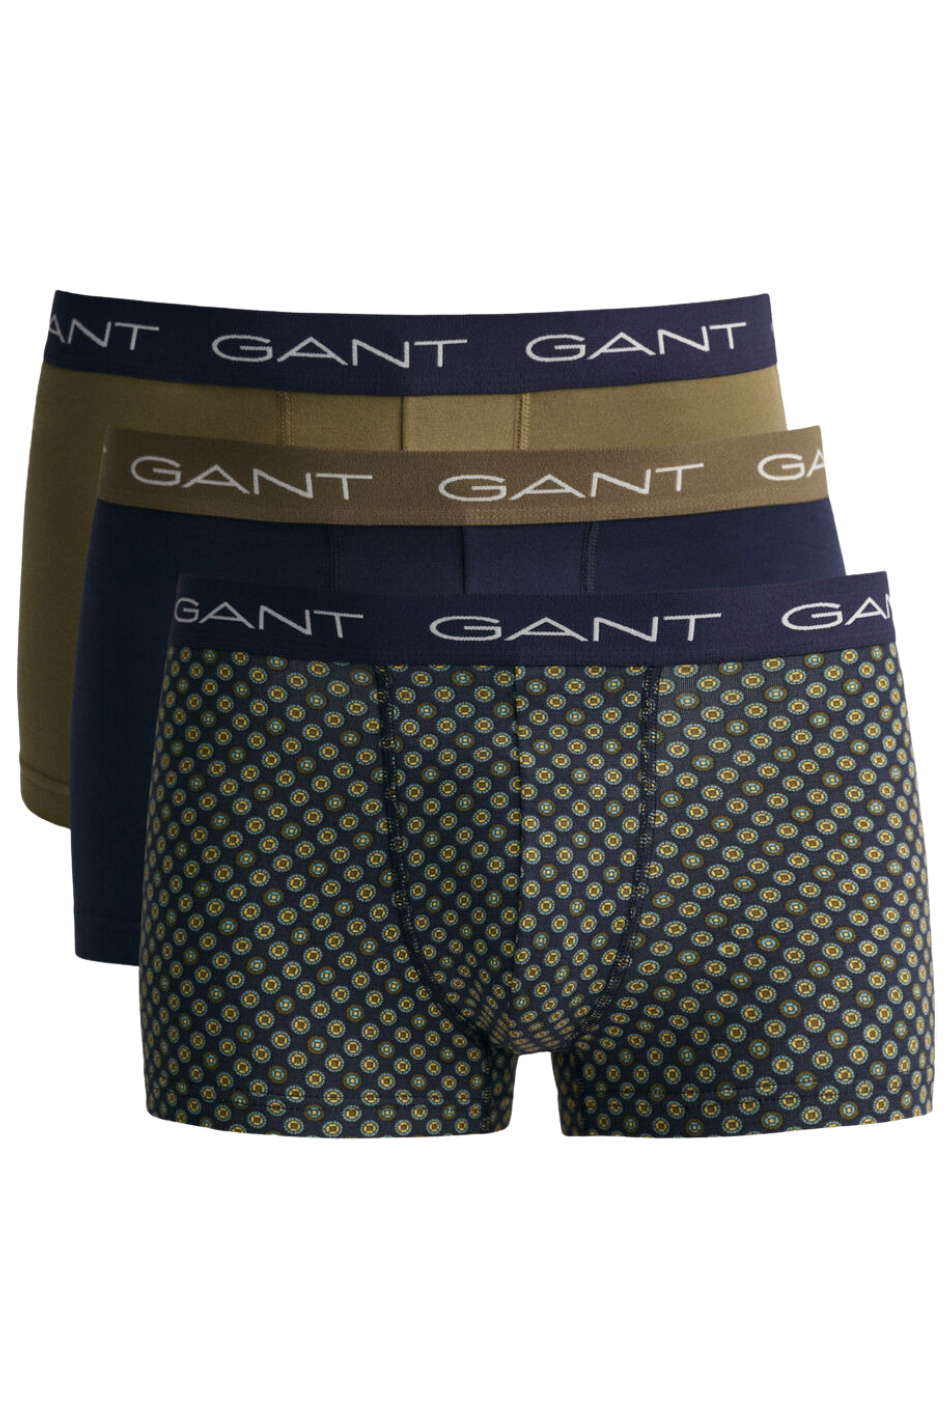 Gant 3 Pack Men's Print Trunk